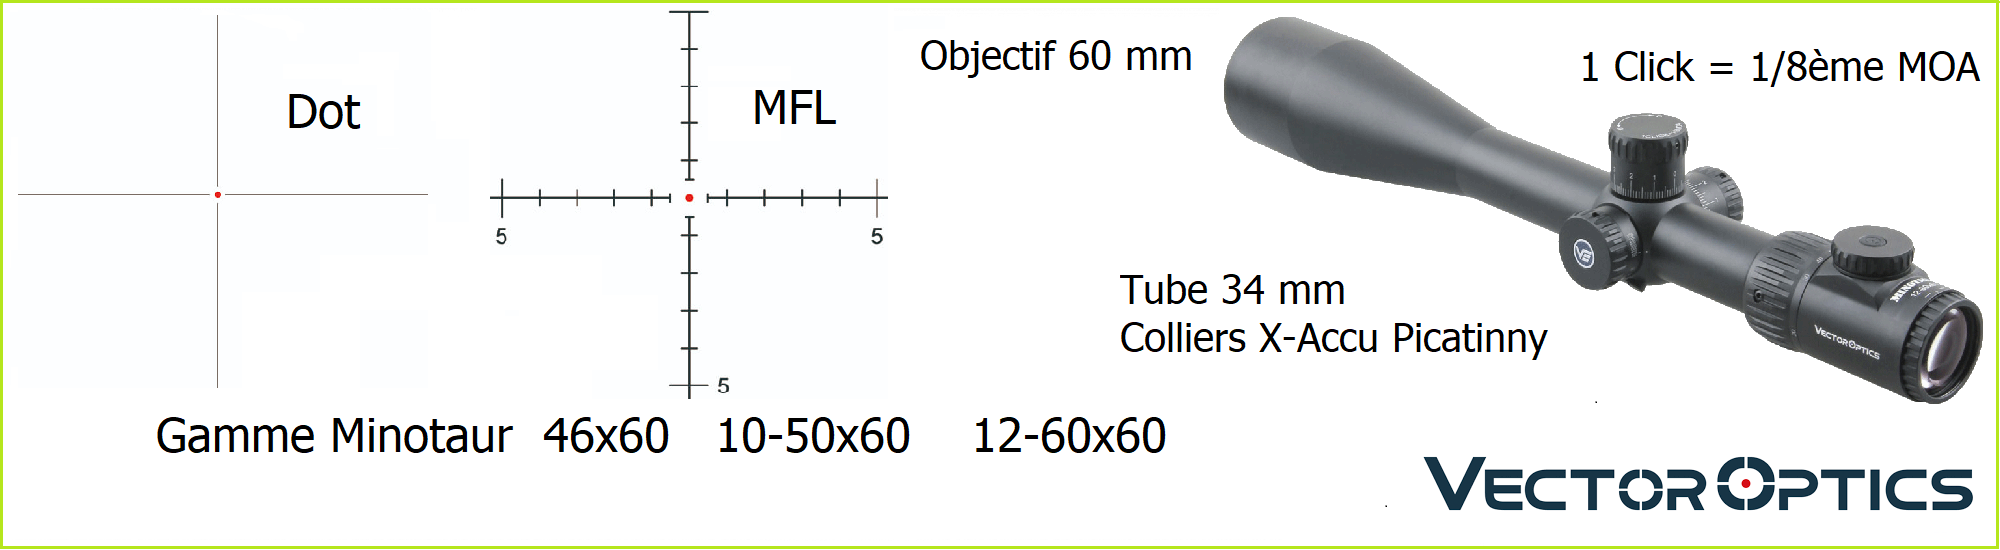 diapo vector optics minotaur